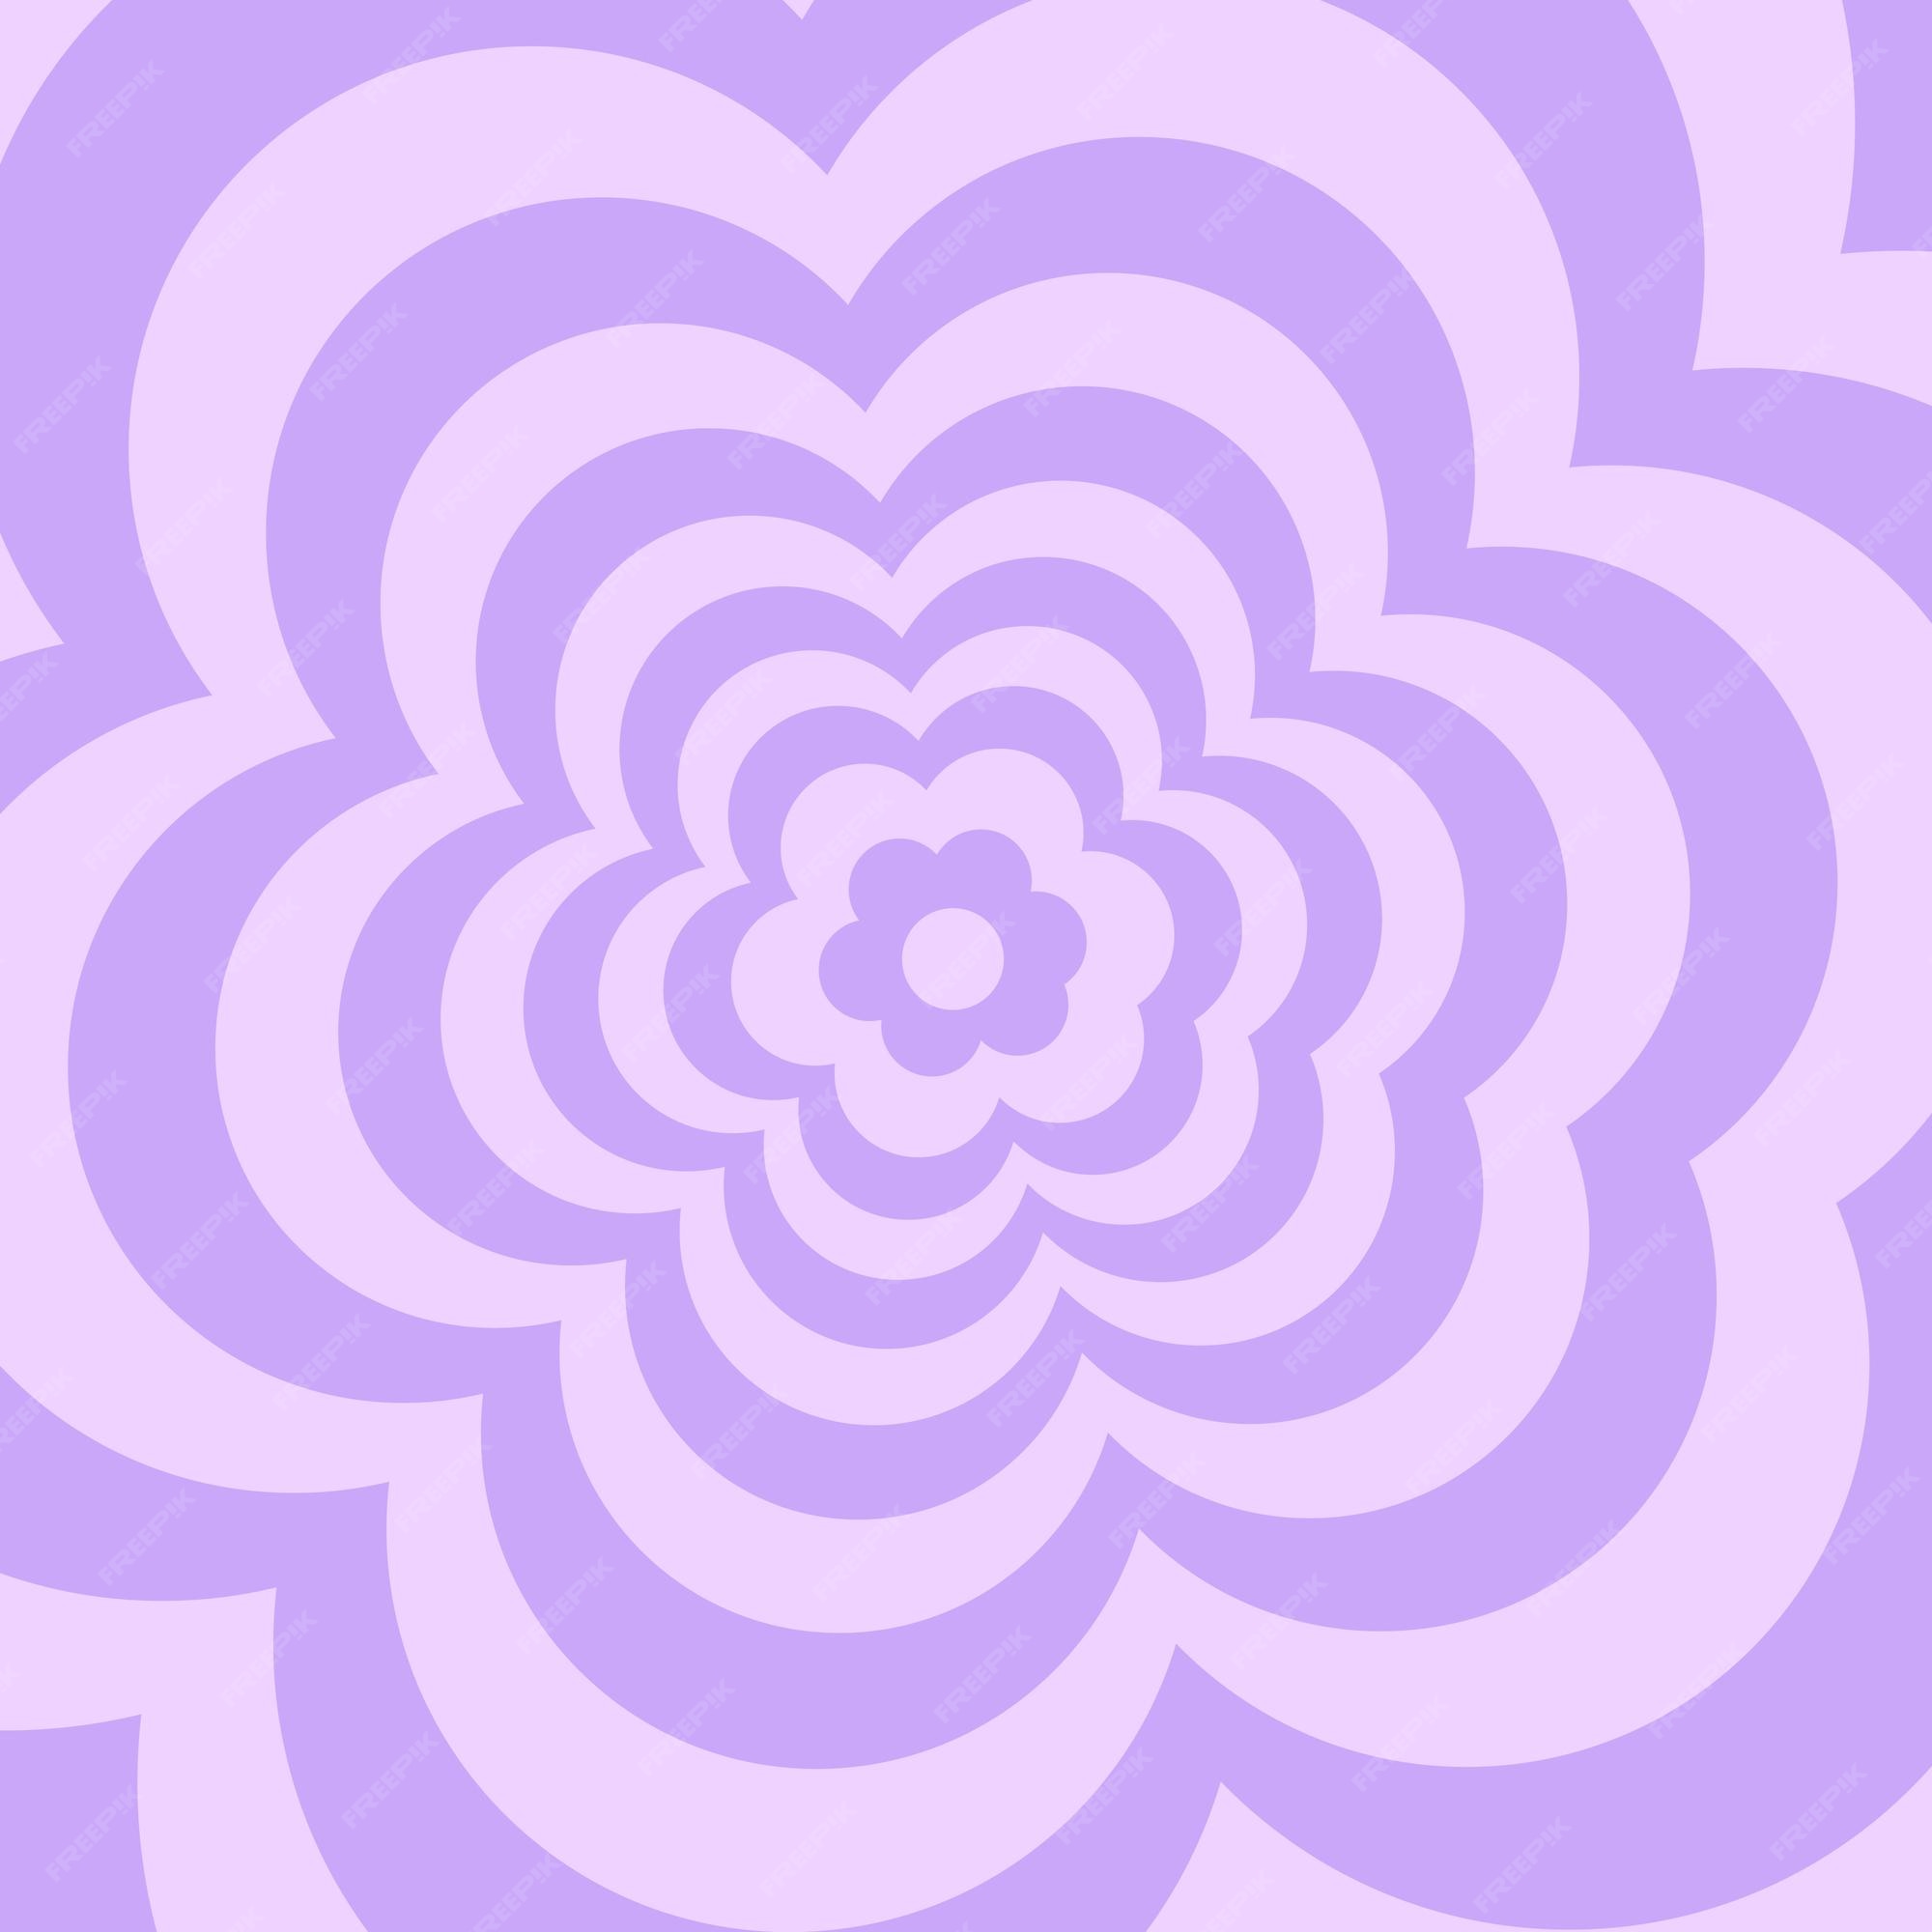 Fondo de flor de margarita retro estético en estilo moderno y2k 90s  gradiente lila púrpura pastel | Vector Premium